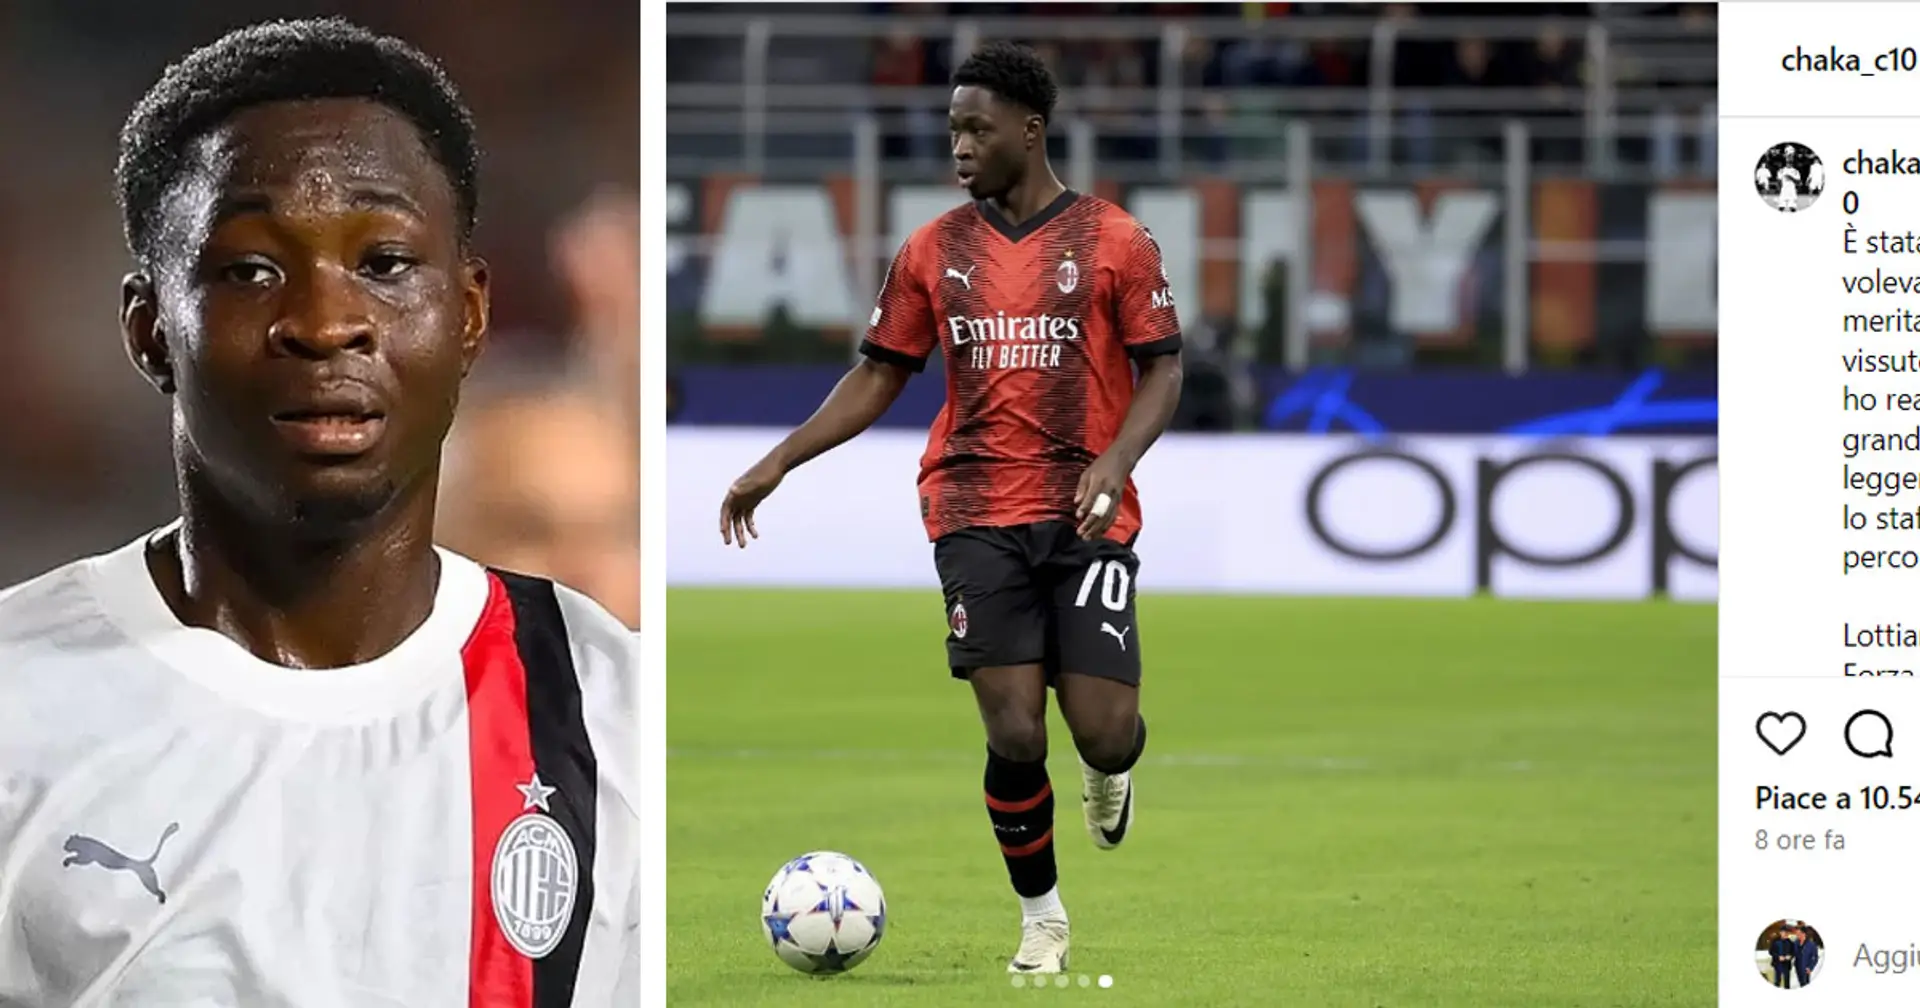 "Il Milan vuole e merita di più", Chaka Traoré esprime gioia per l'esordio ma alza la voce dopo il ko in Champions